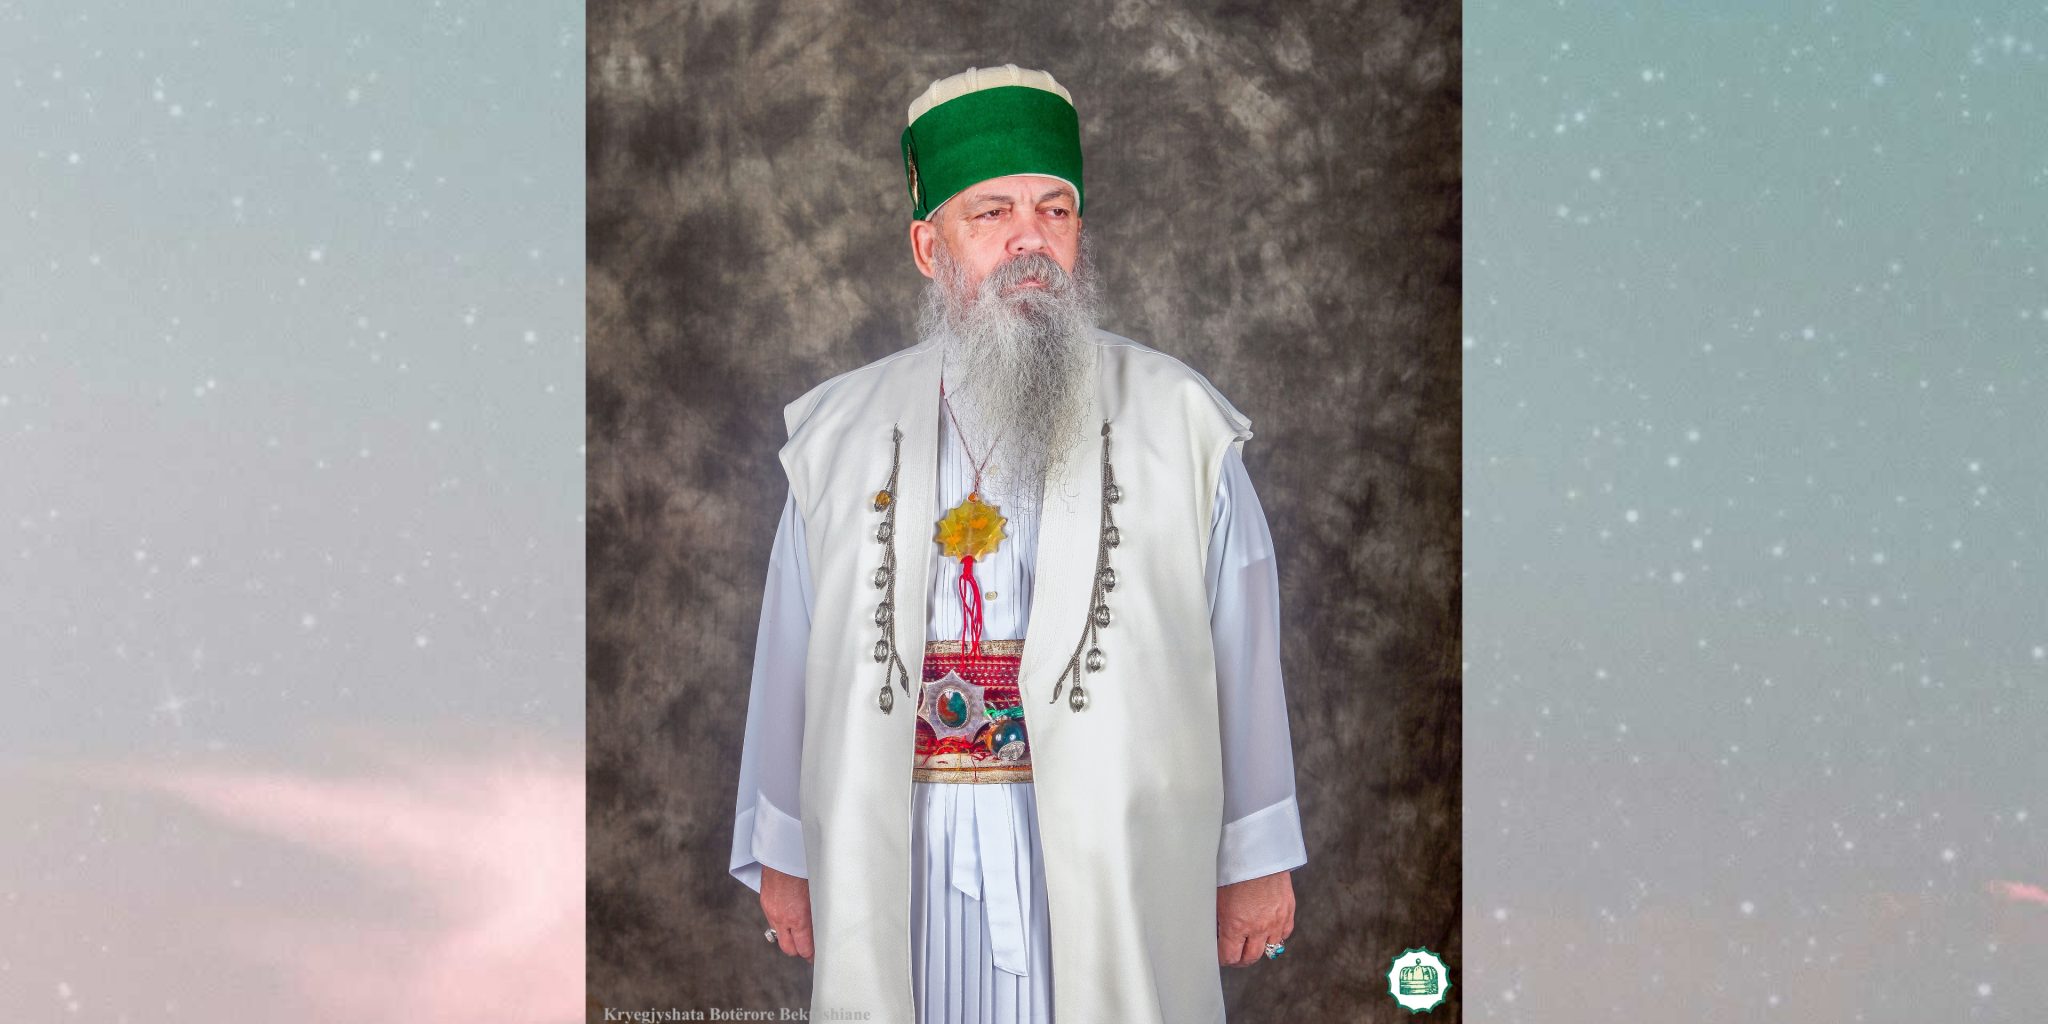 Kryegjyshi Botëror Bektashian, Dede Baba Edmond Brahimaj më 19 maj, mbush 65 vjeç